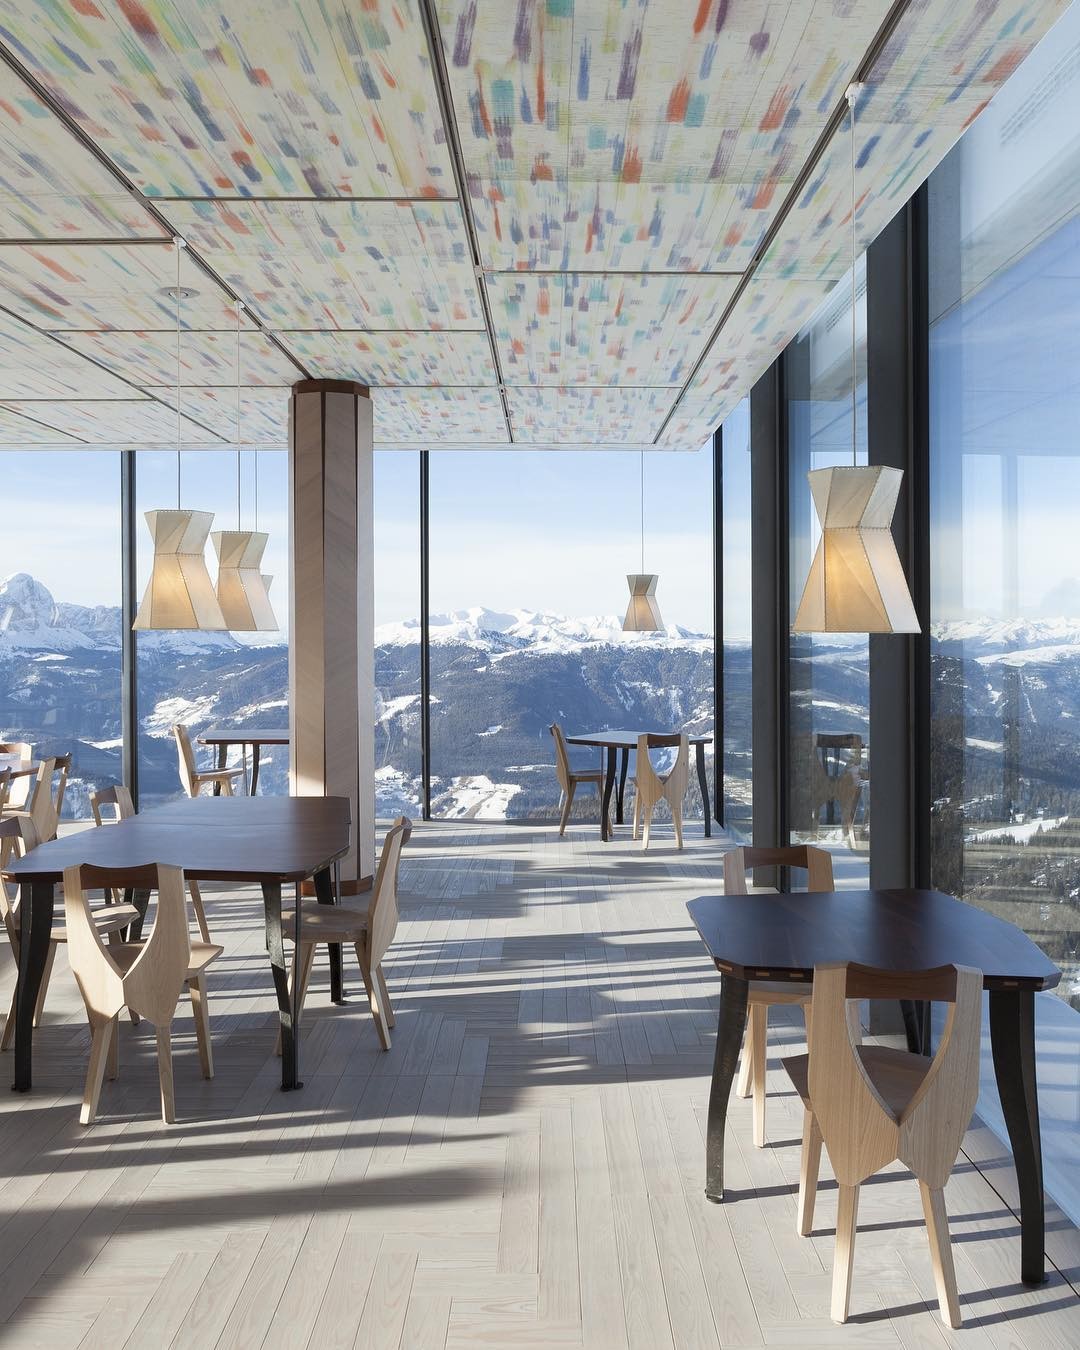 No topo dos alpes italianos, restaurante encanta com vistas arrebatadoras (Foto: Divulgação)